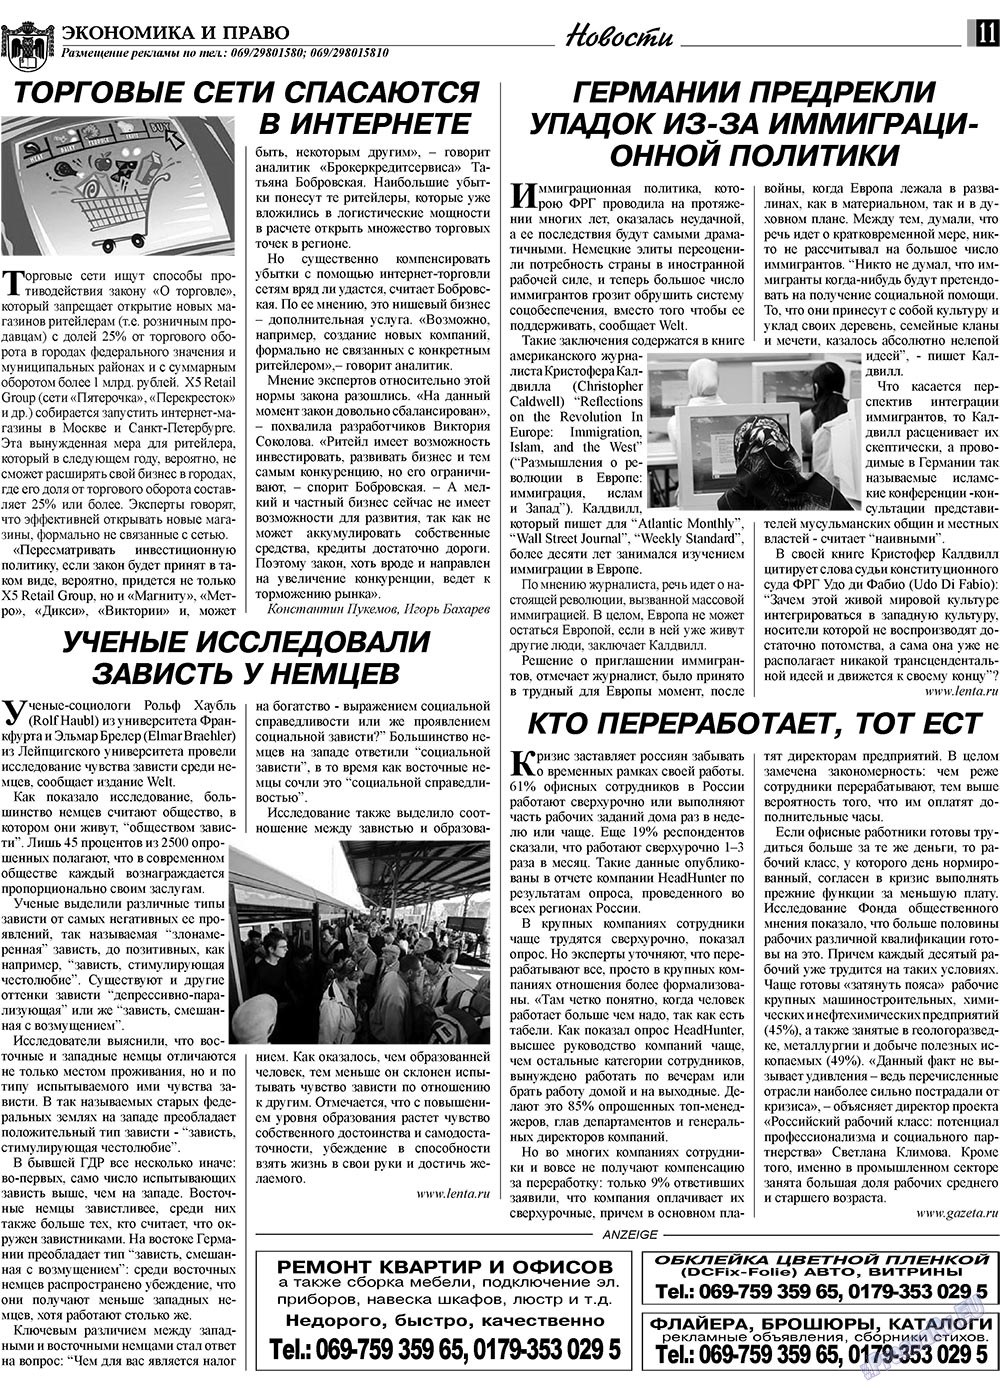 Экономика и право, газета. 2009 №10 стр.11